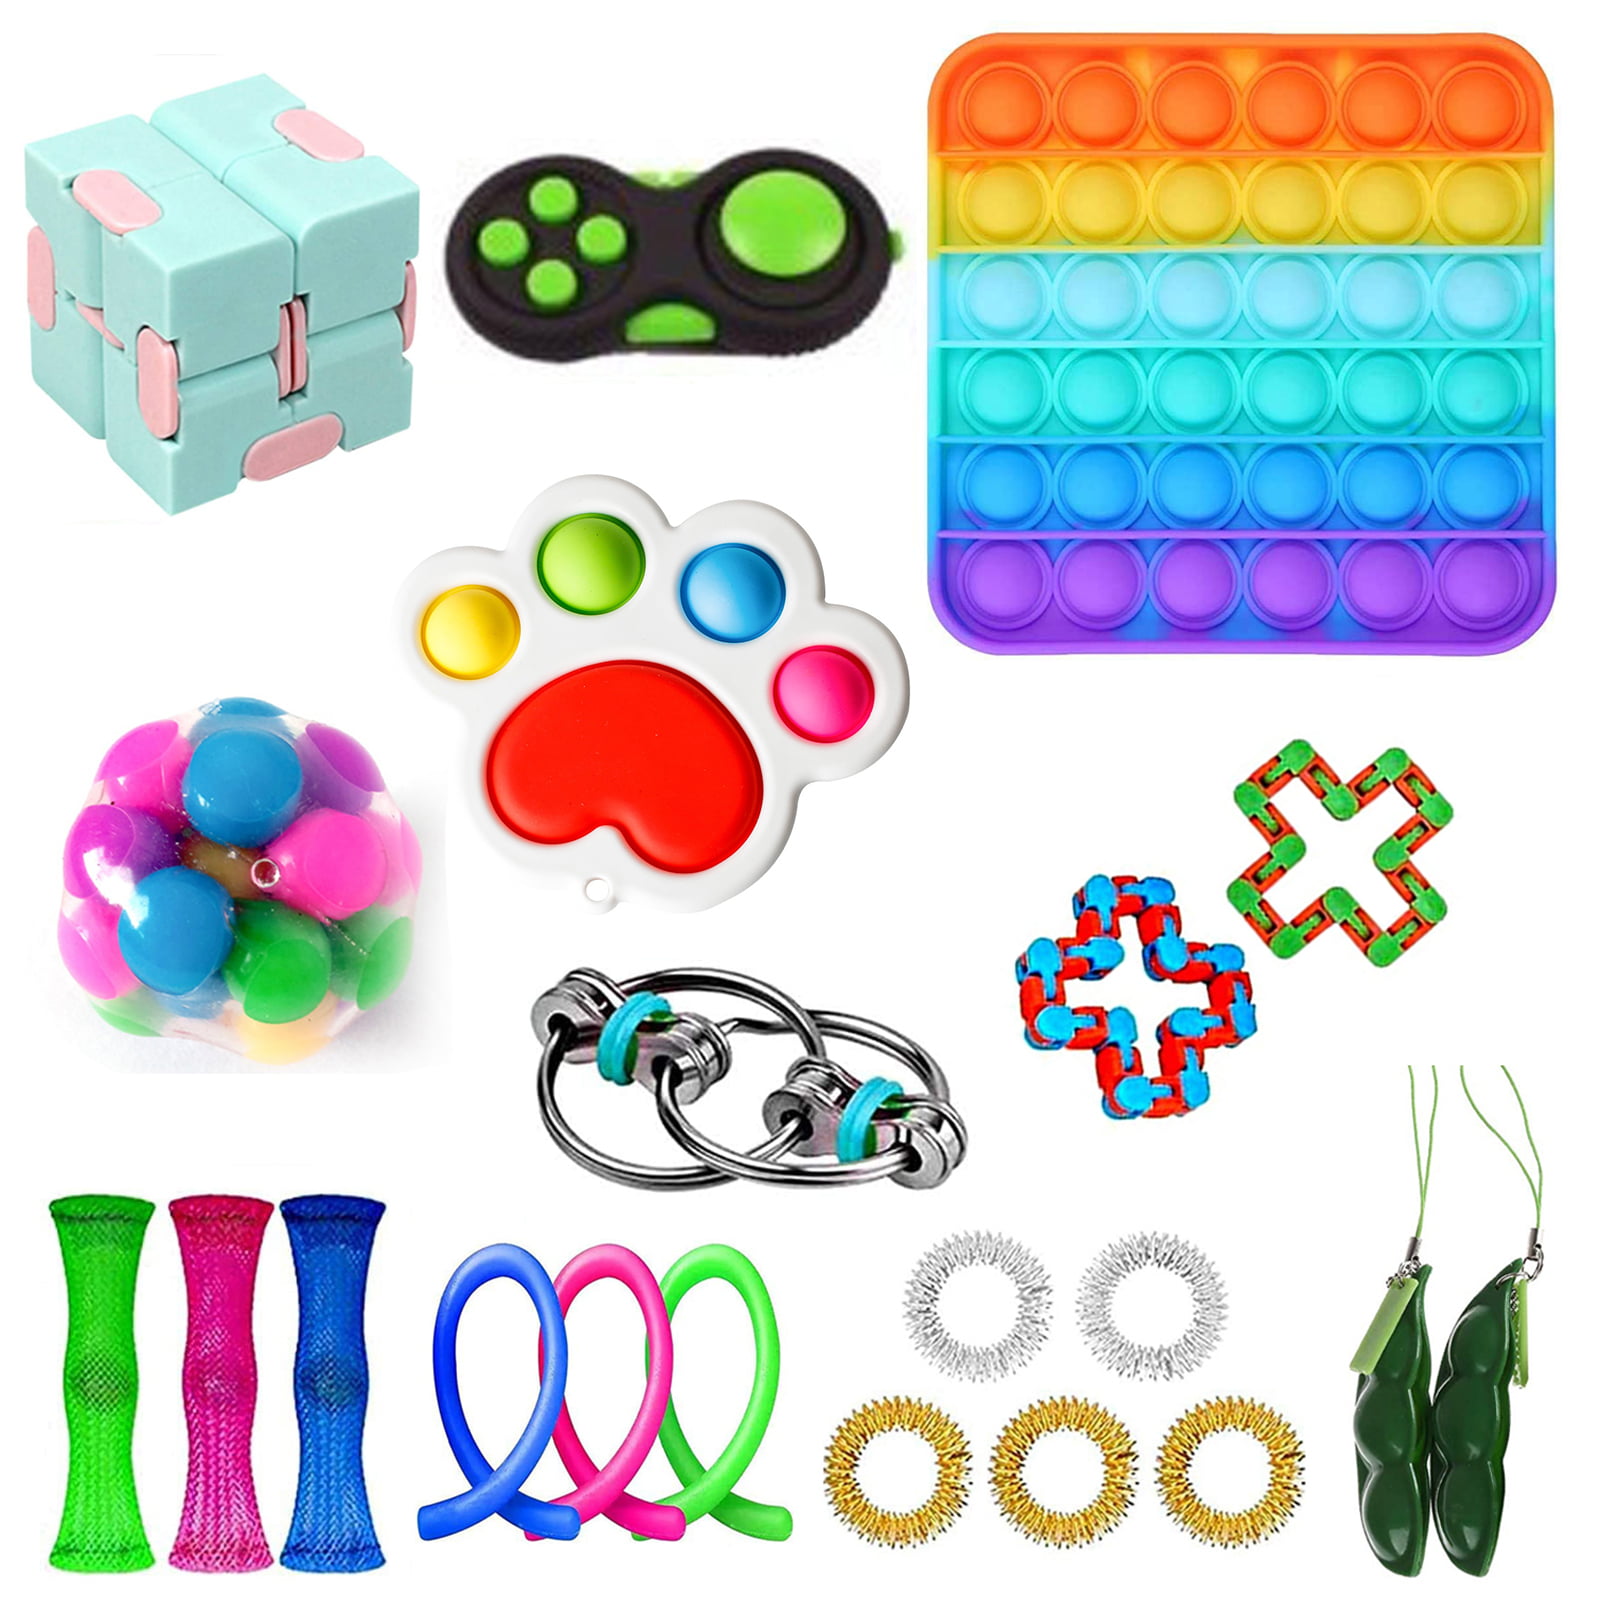 Details about   8PCS Fidget Toys Set Sensory Tools Bundle Stress Relief Hand Kids Adult ADHD Toy 